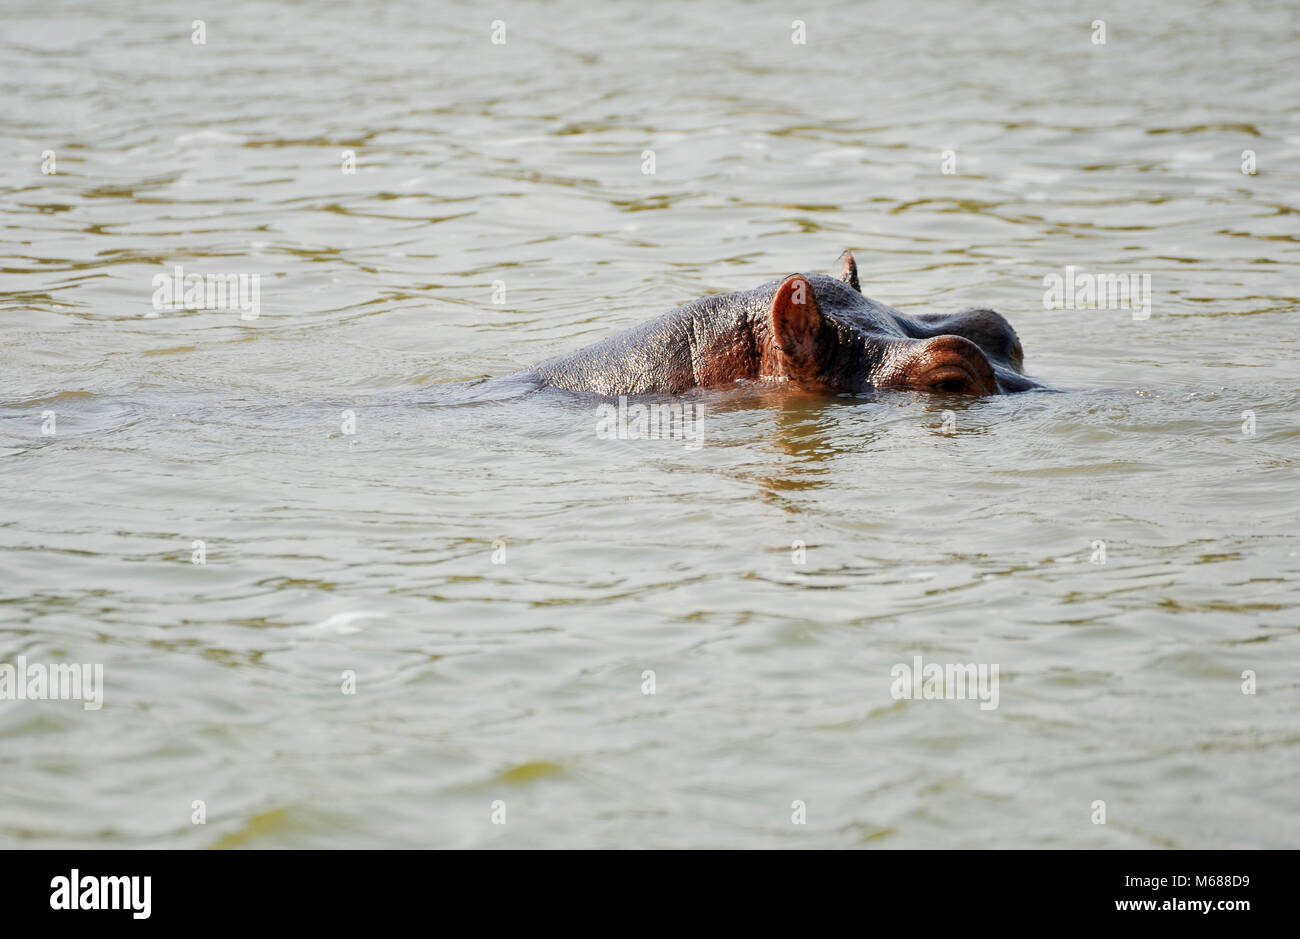 Hippo's in Uganda Stock Photo